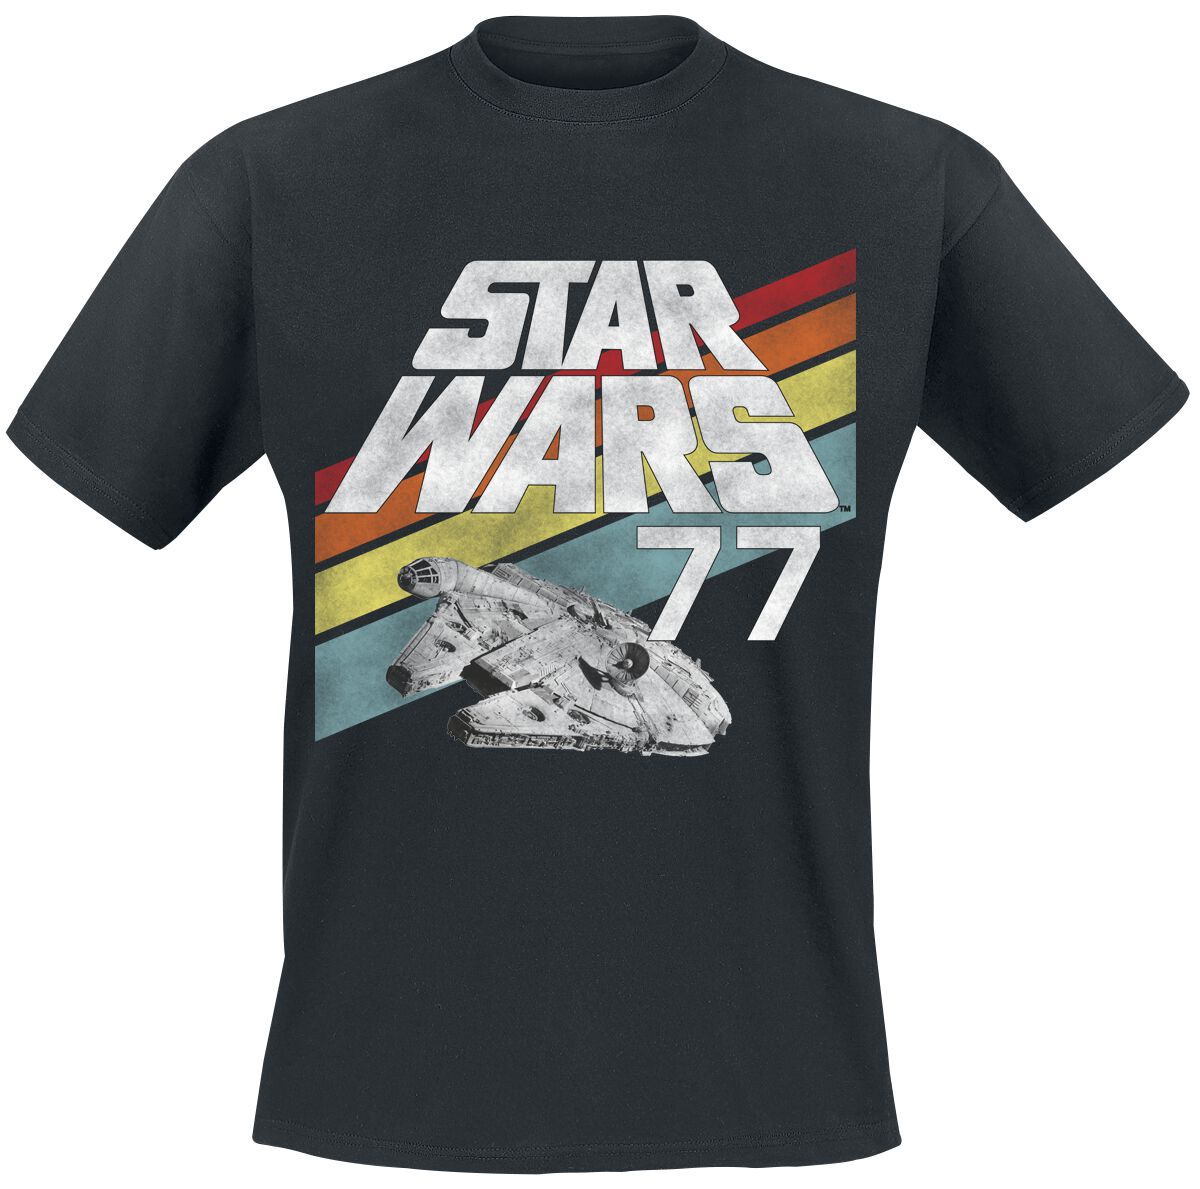 Star Wars T-Shirt - Star Wars - 77 - S bis XXL - für Männer - Größe M - schwarz  - EMP exklusives Merchandise!